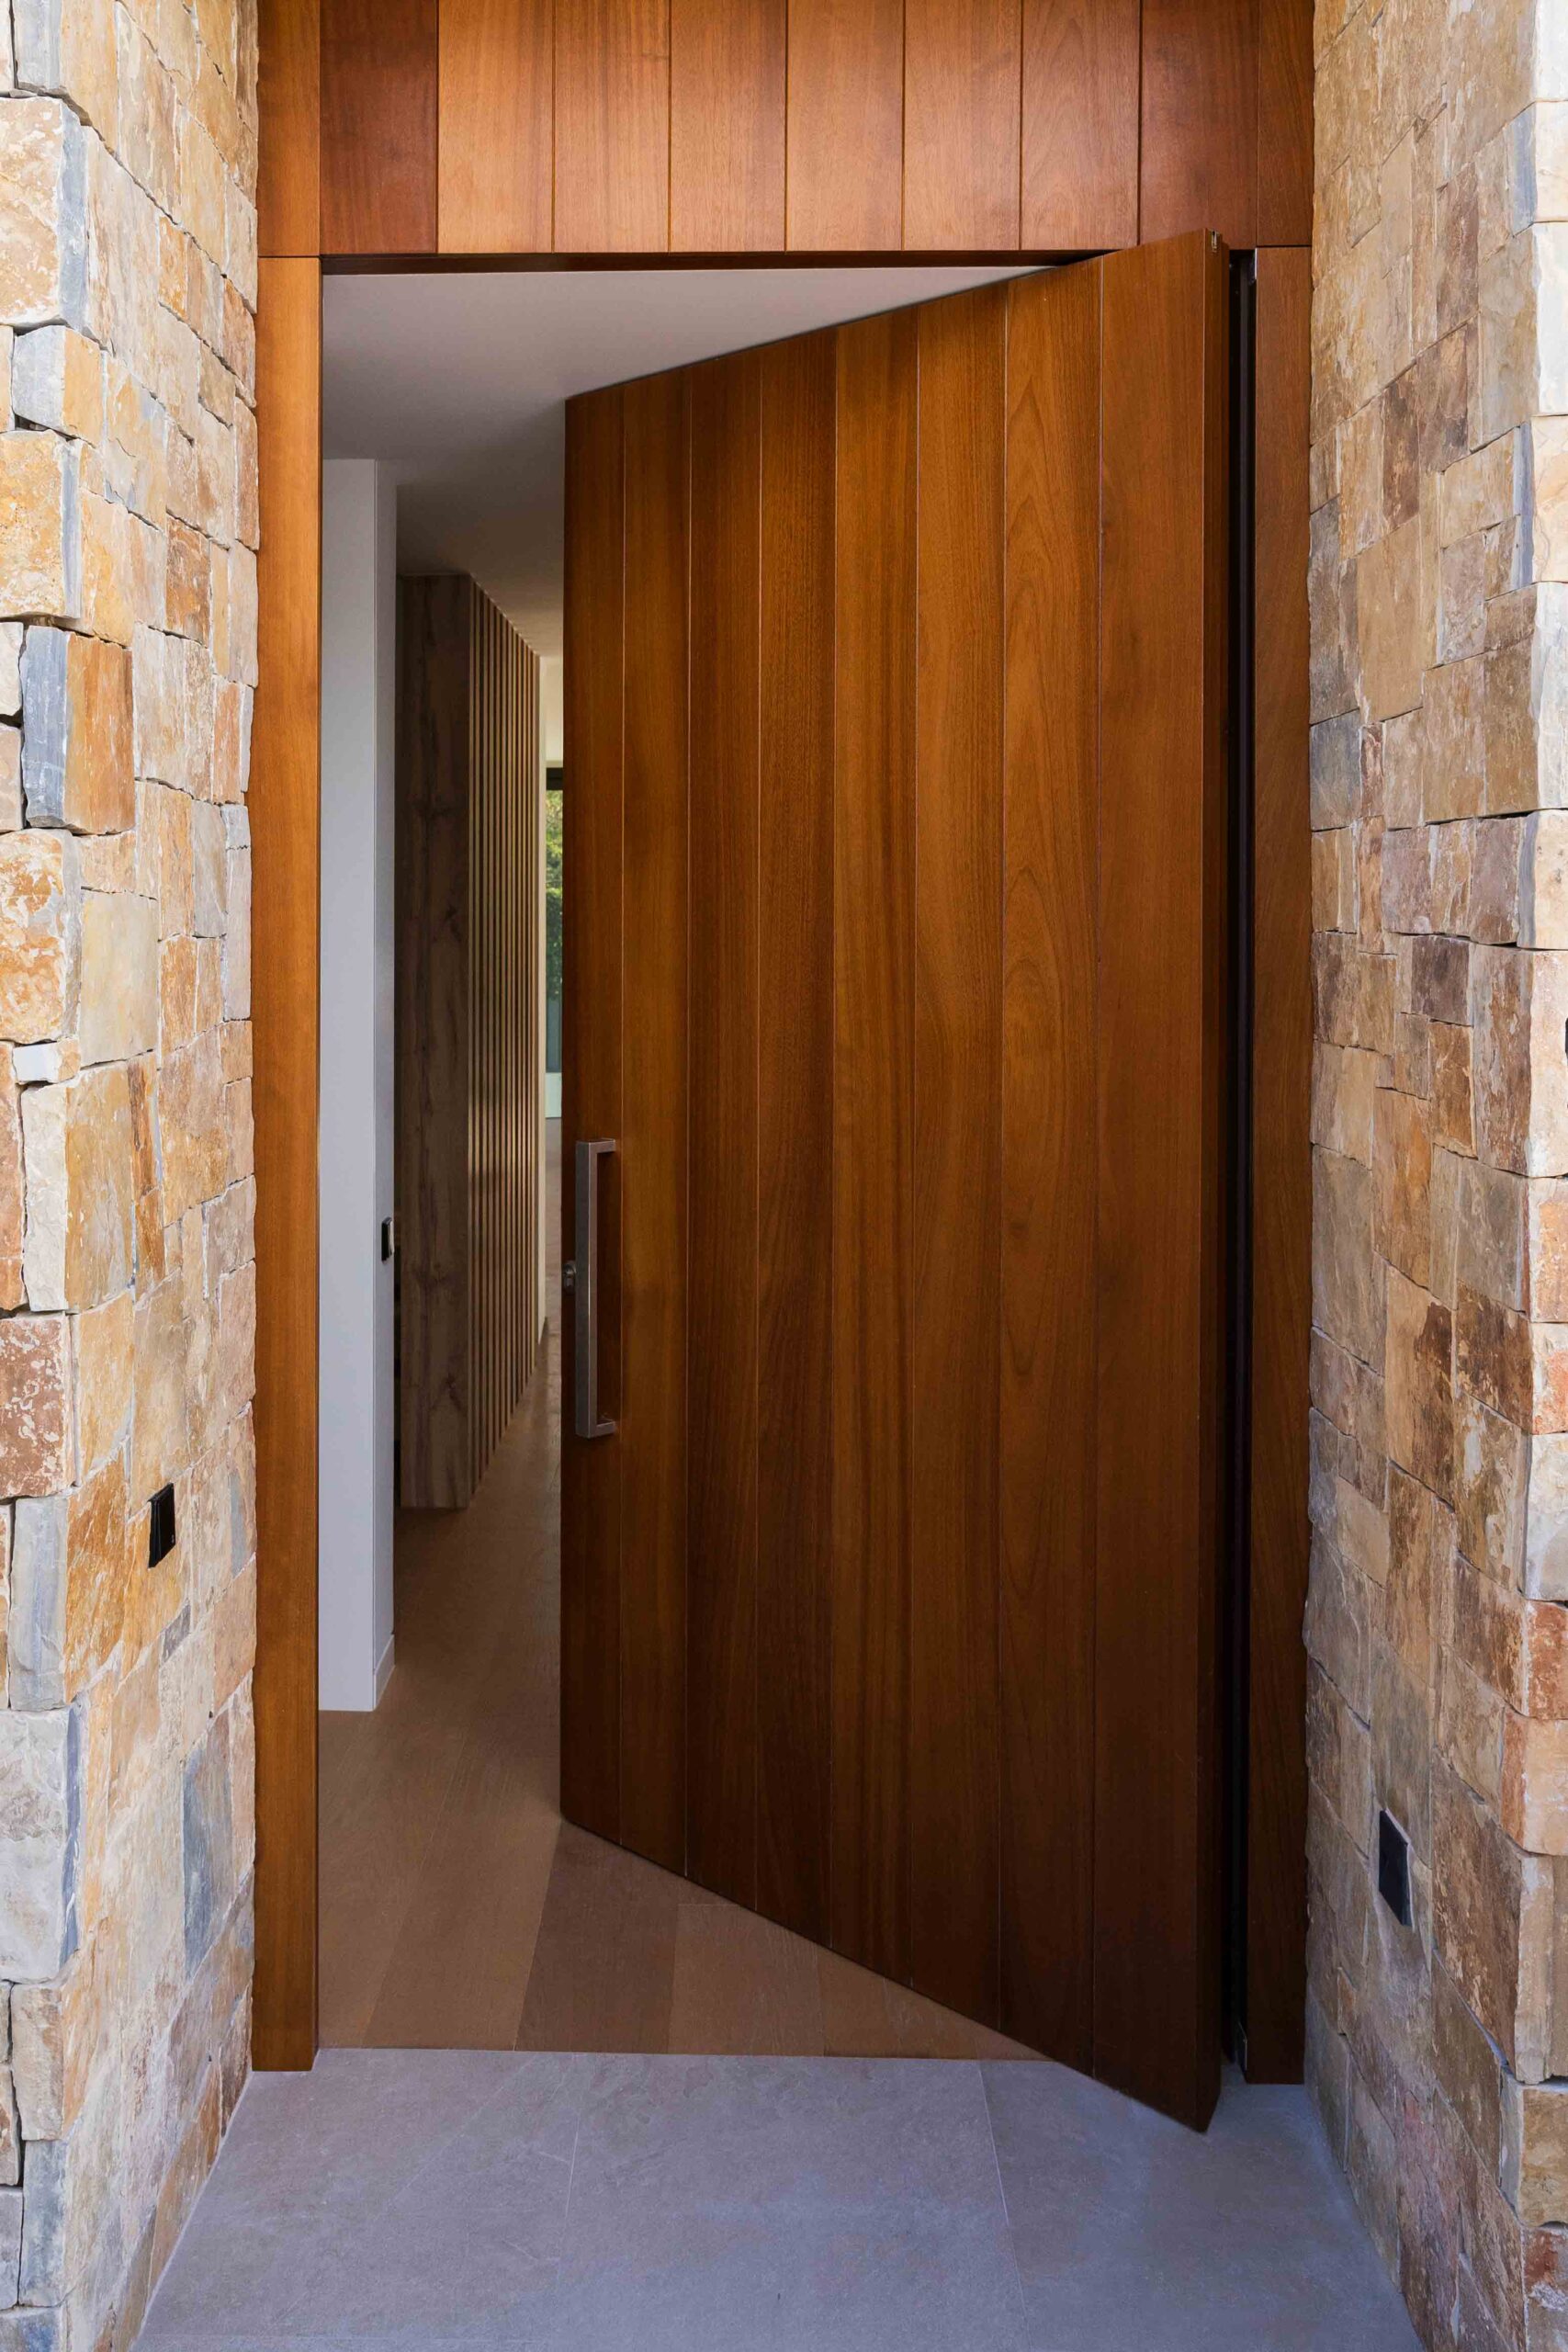 Drehtür in einem Luxushaus mit Materialien wie technischem Holz und Naturstein an der Fassade